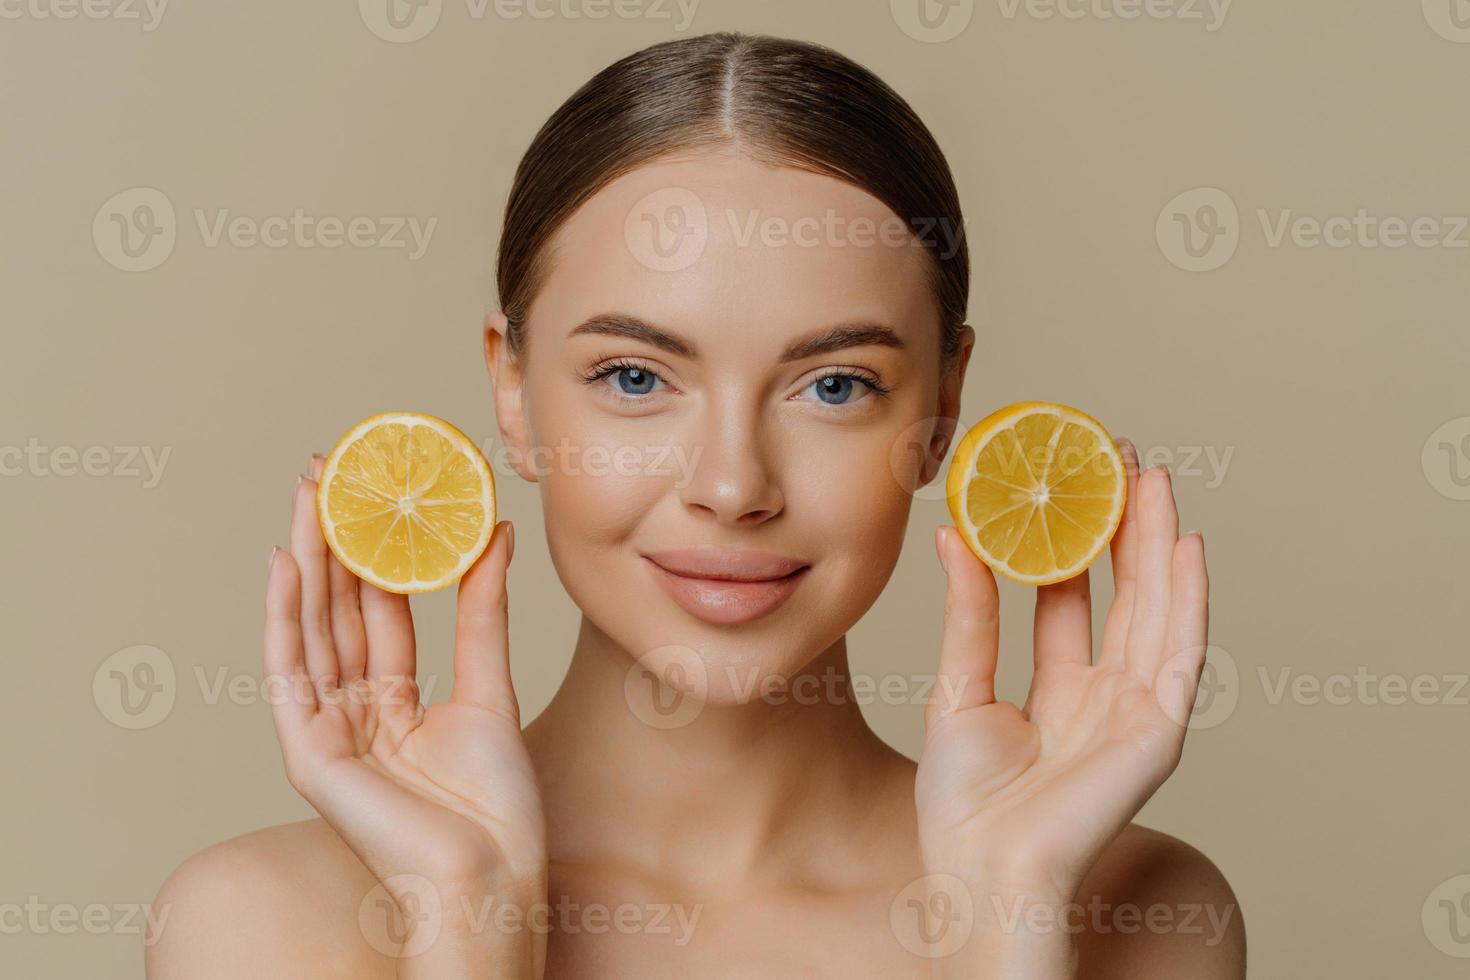 headshot van mooie brunette vrouw houdt sappige schijfjes citroen heeft een gezonde glanzende huid krijgt vitamines van citrus staat blote schouders binnen tegen een beige achtergrond. gezichtsbehandeling concept foto